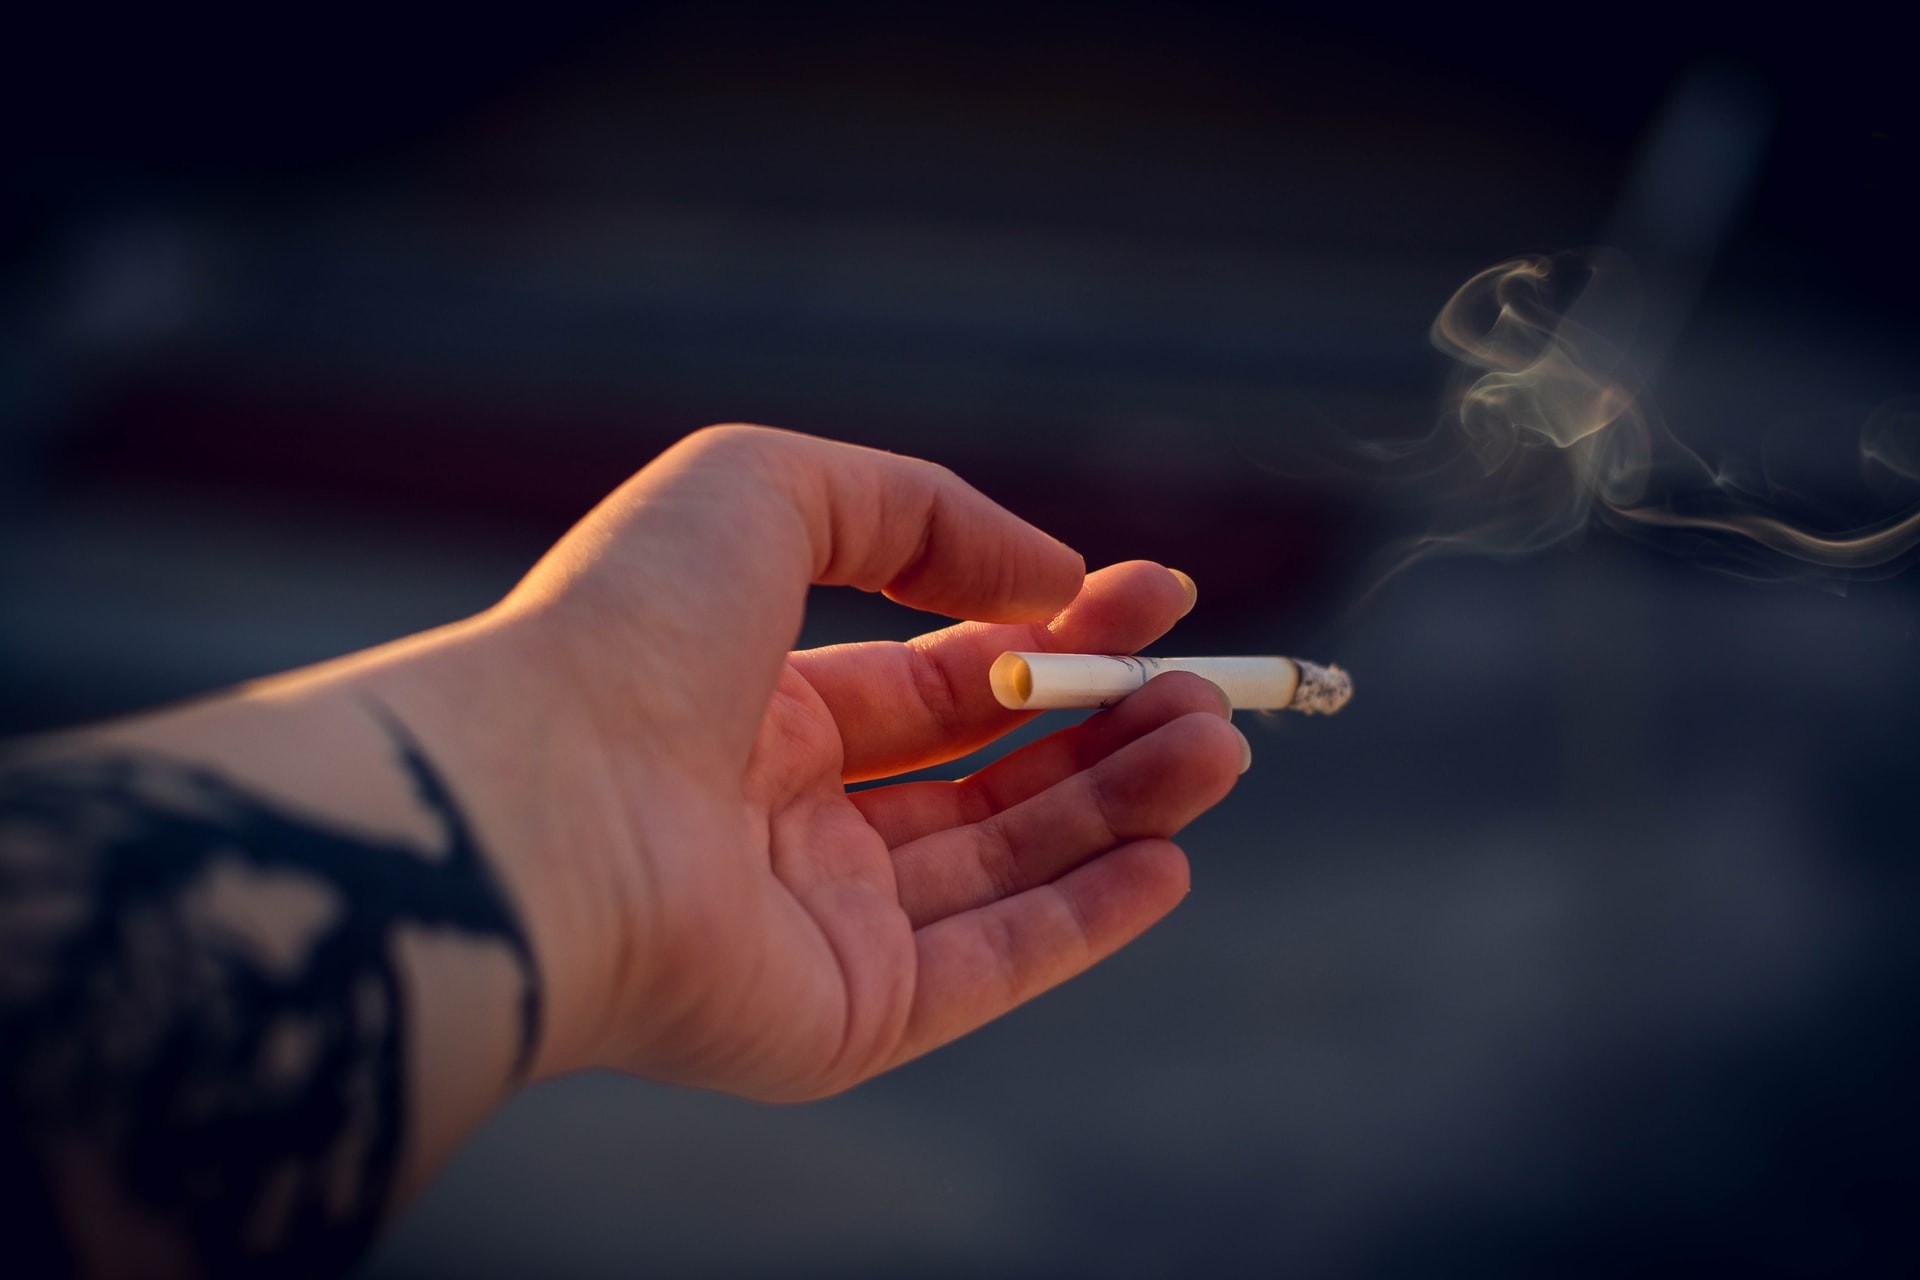 Fumar usando máscara pode agravar danos vasculares do cigarro, diz estudo  (Foto: Irina Iriser/Unsplash)